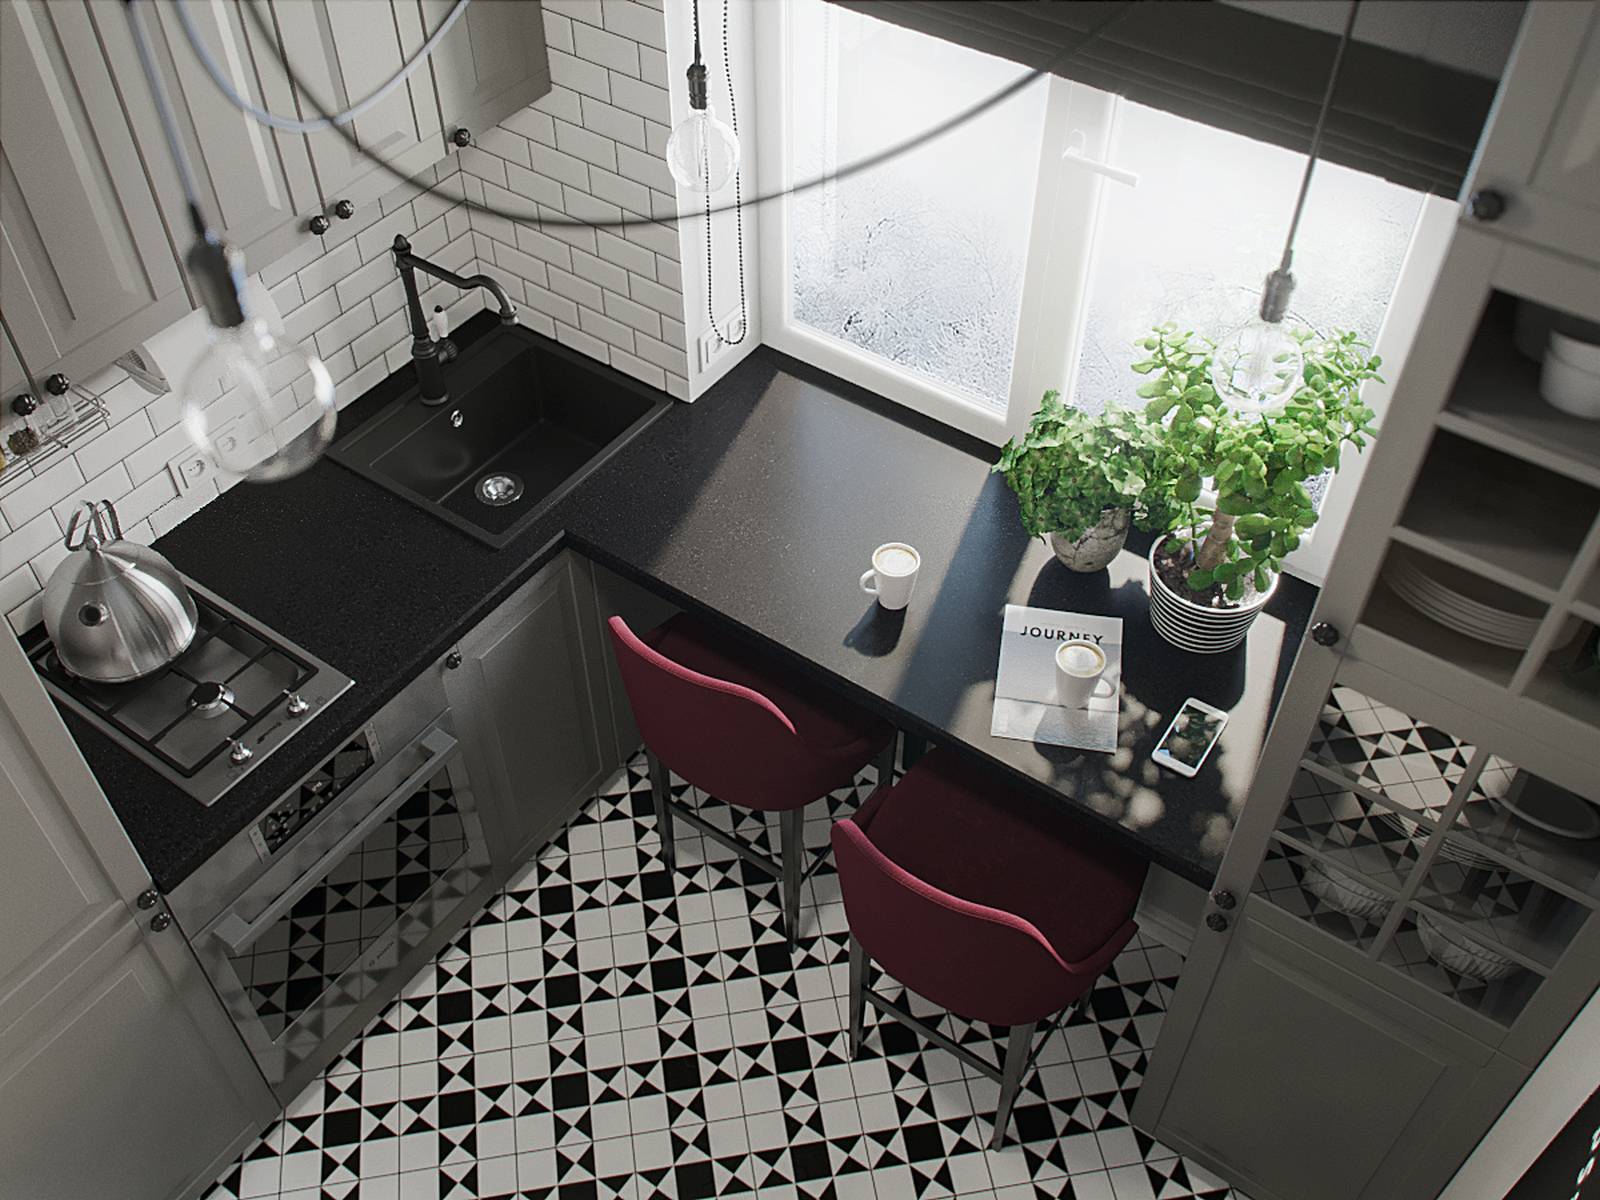 Đây là hình ảnh phòng bếp kết hợp khu vực ăn uống được chụp từ trên cao. Phòng bếp có phong cách 'mạnh mẽ' hơn do sử dụng gam màu chủ đạo là trắng, đen, xám và một ít gam màu đỏ tía.